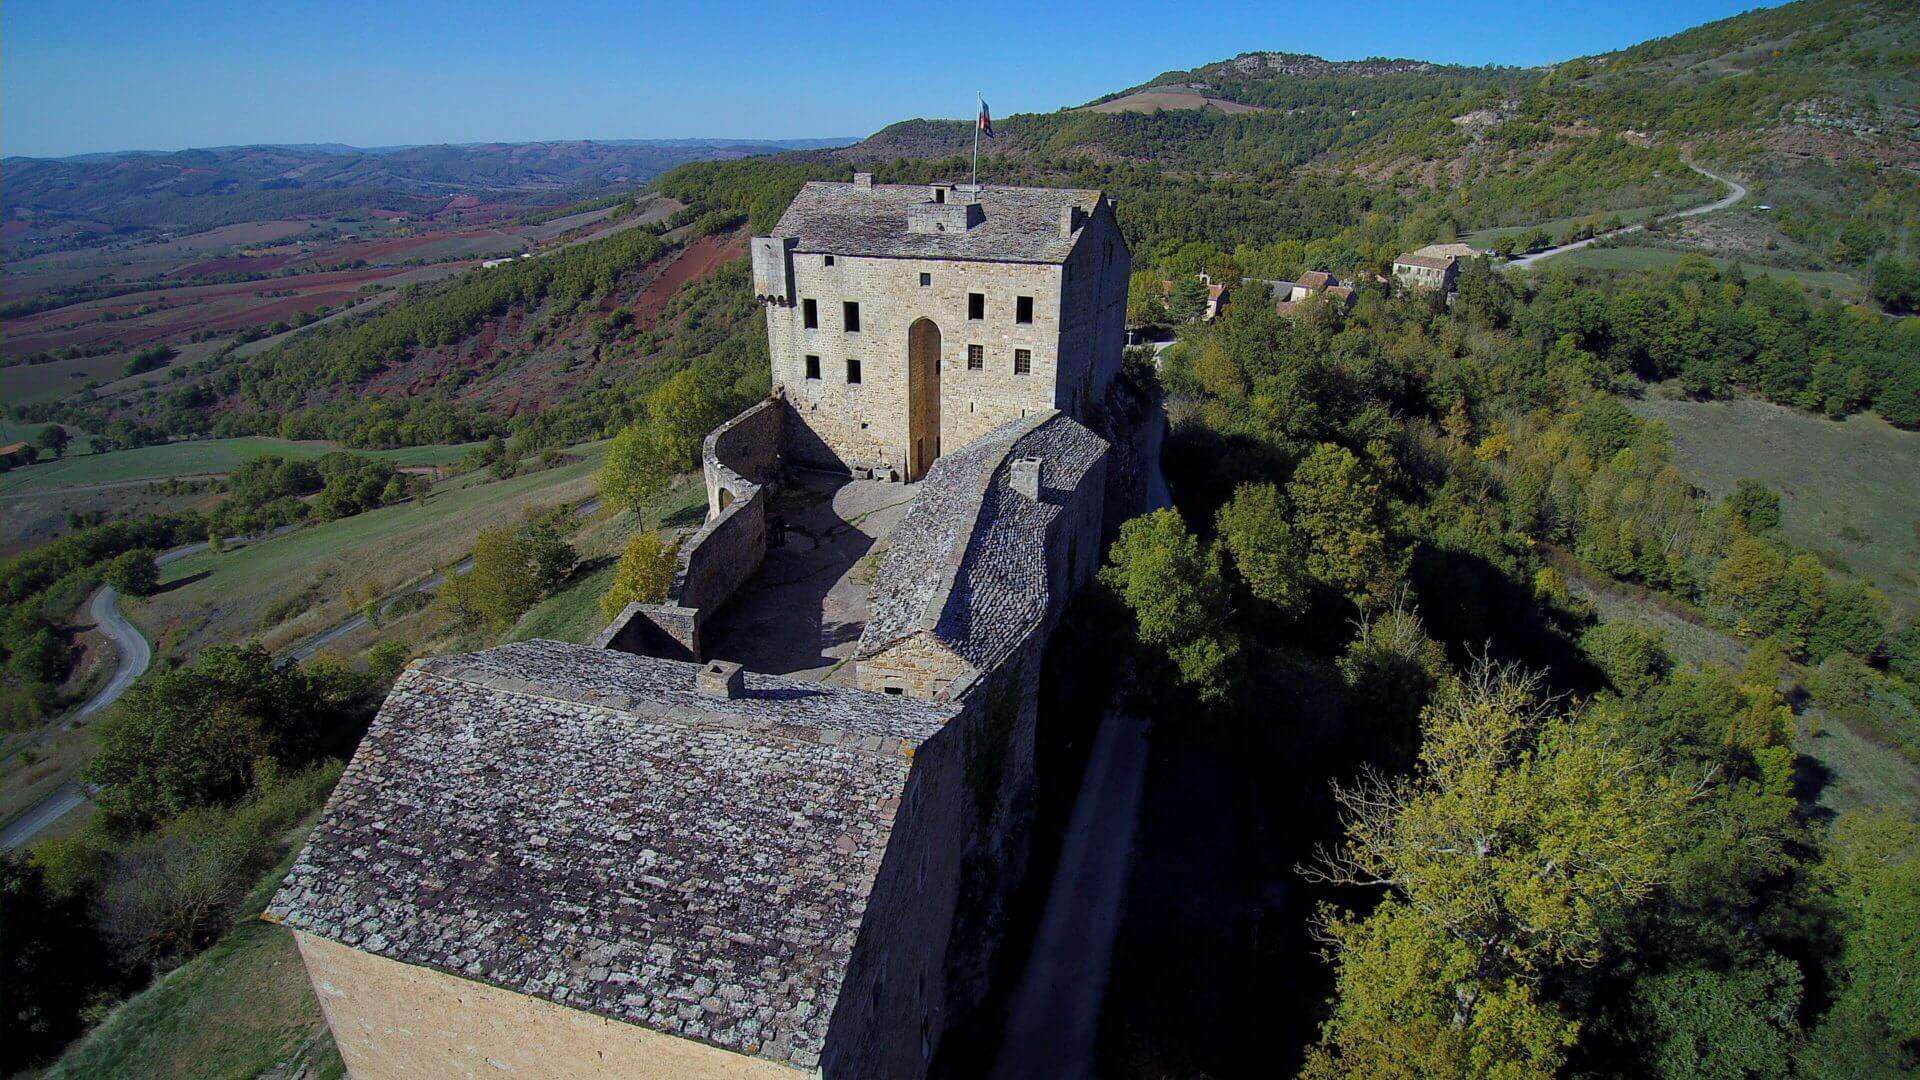 (c) Chateau-de-montaigut.com